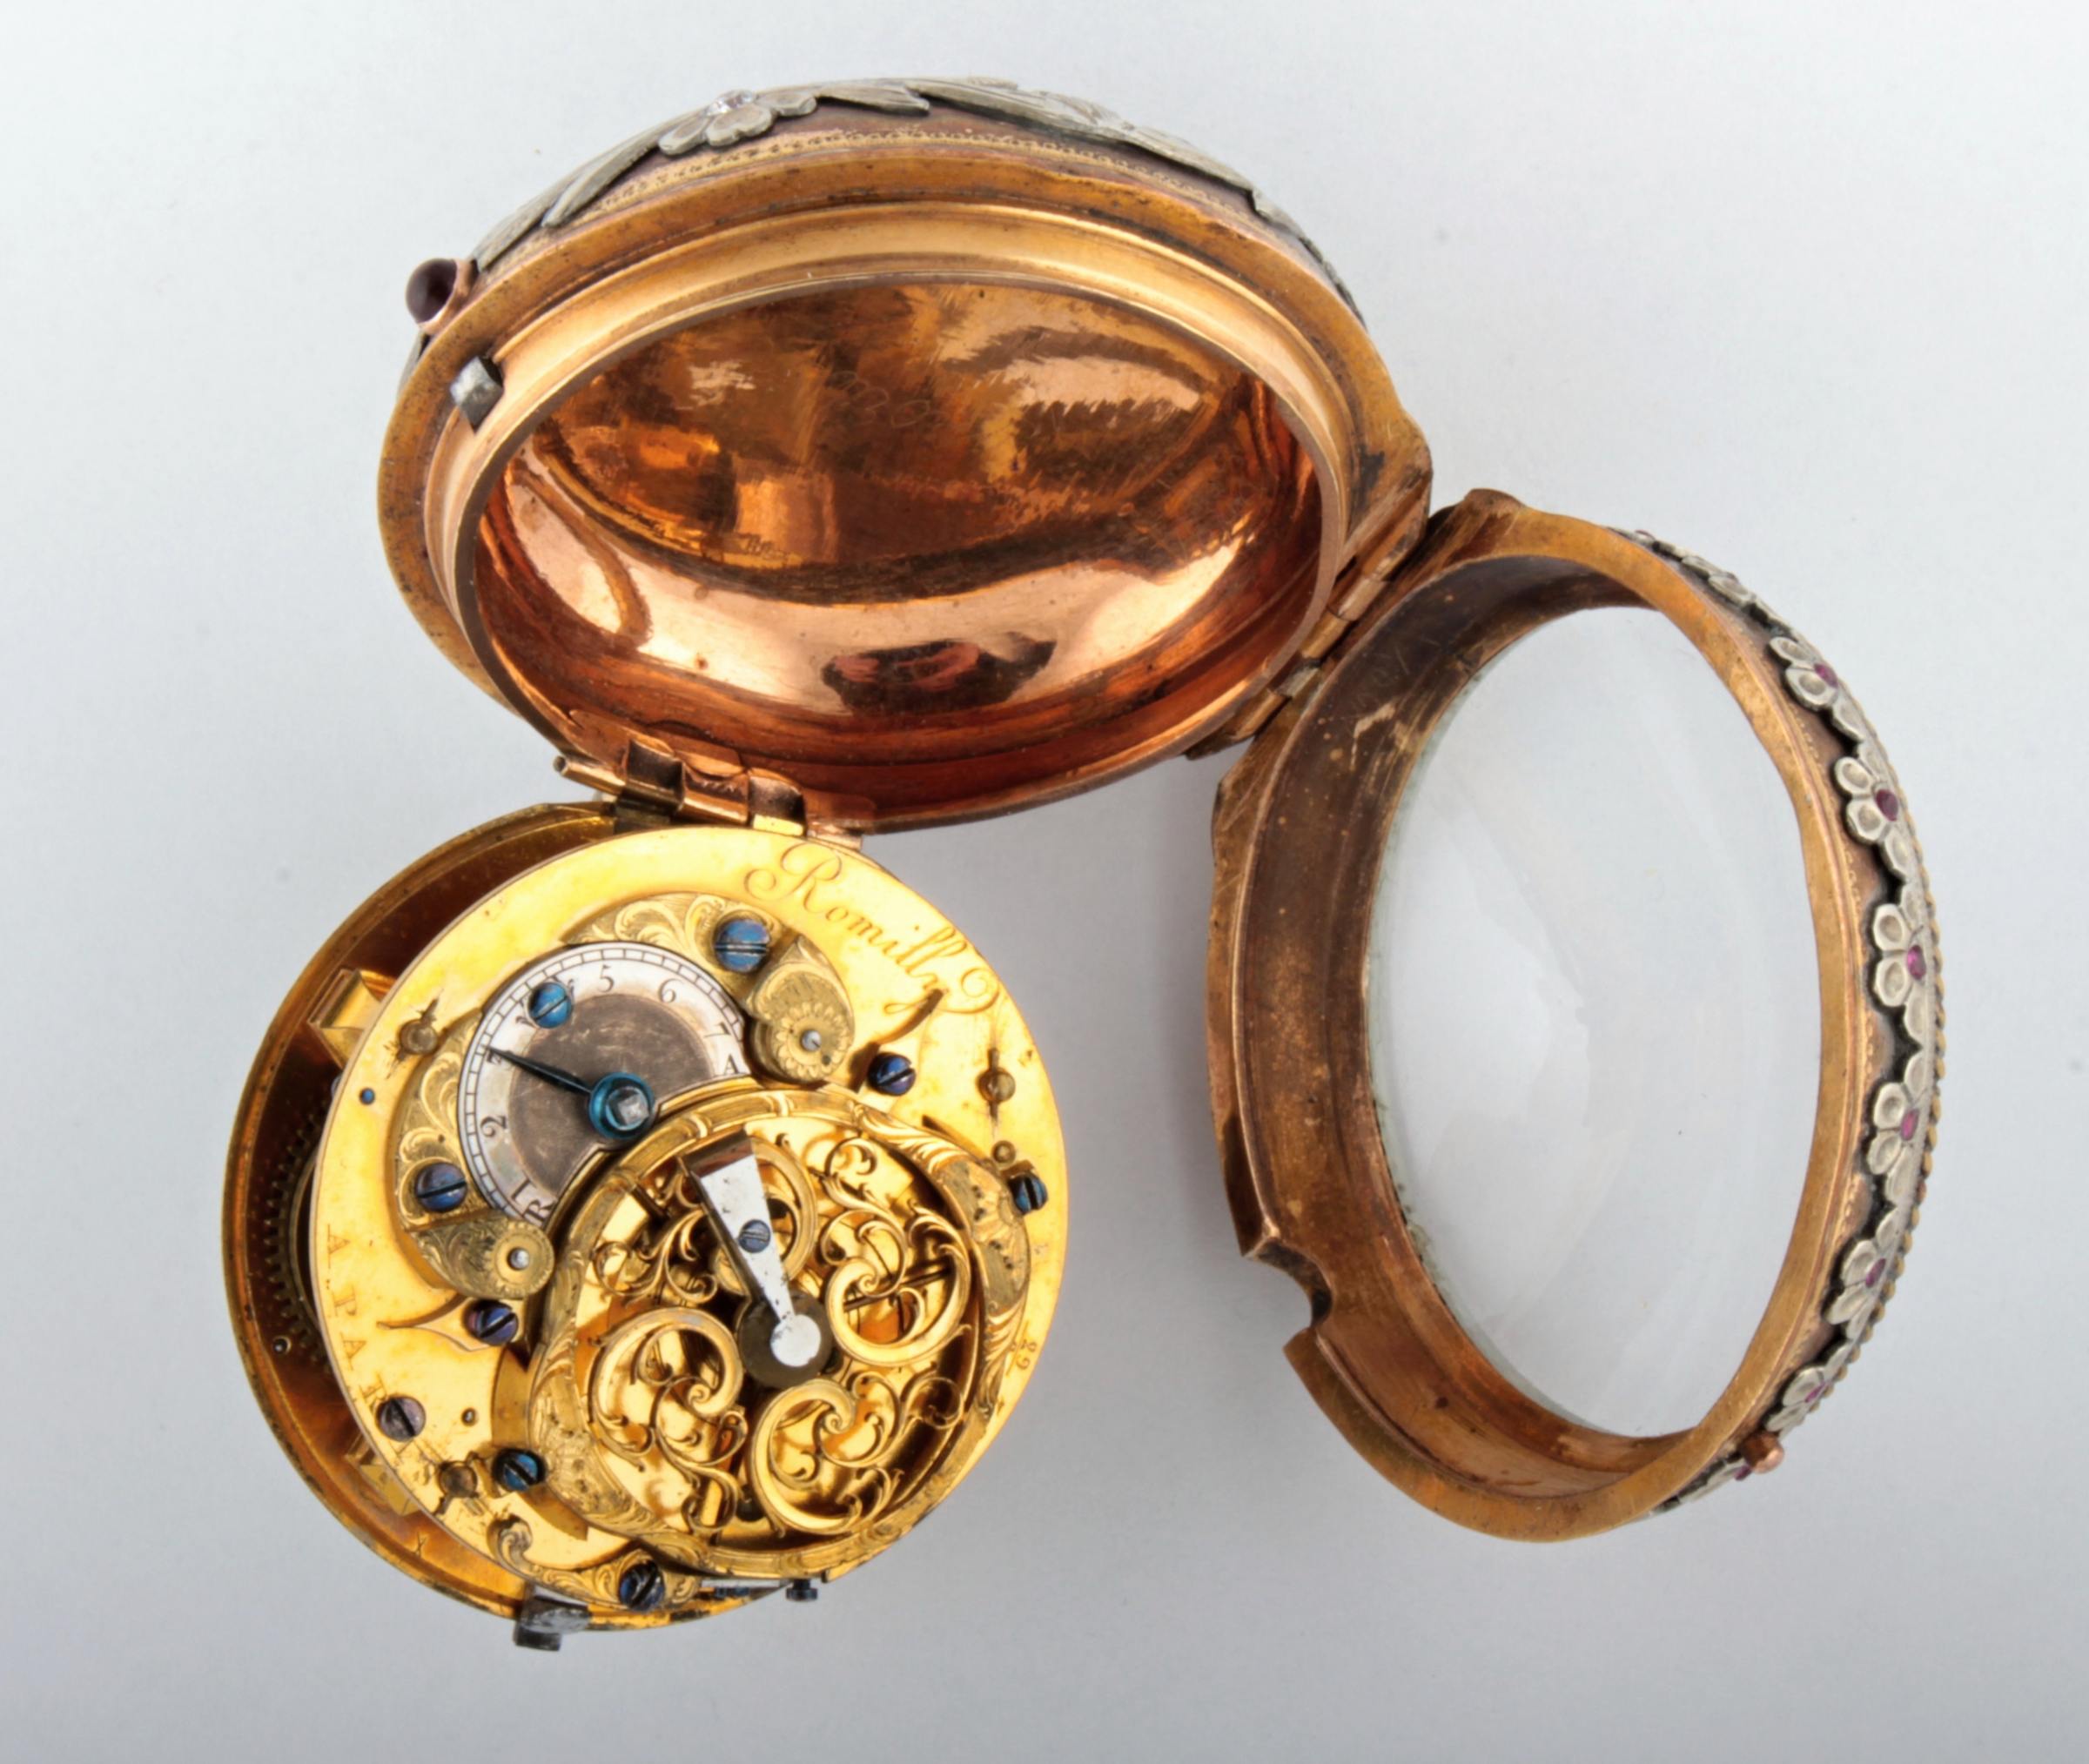 Bohatě zdobené kapesní hodinky - Romilly A Paris